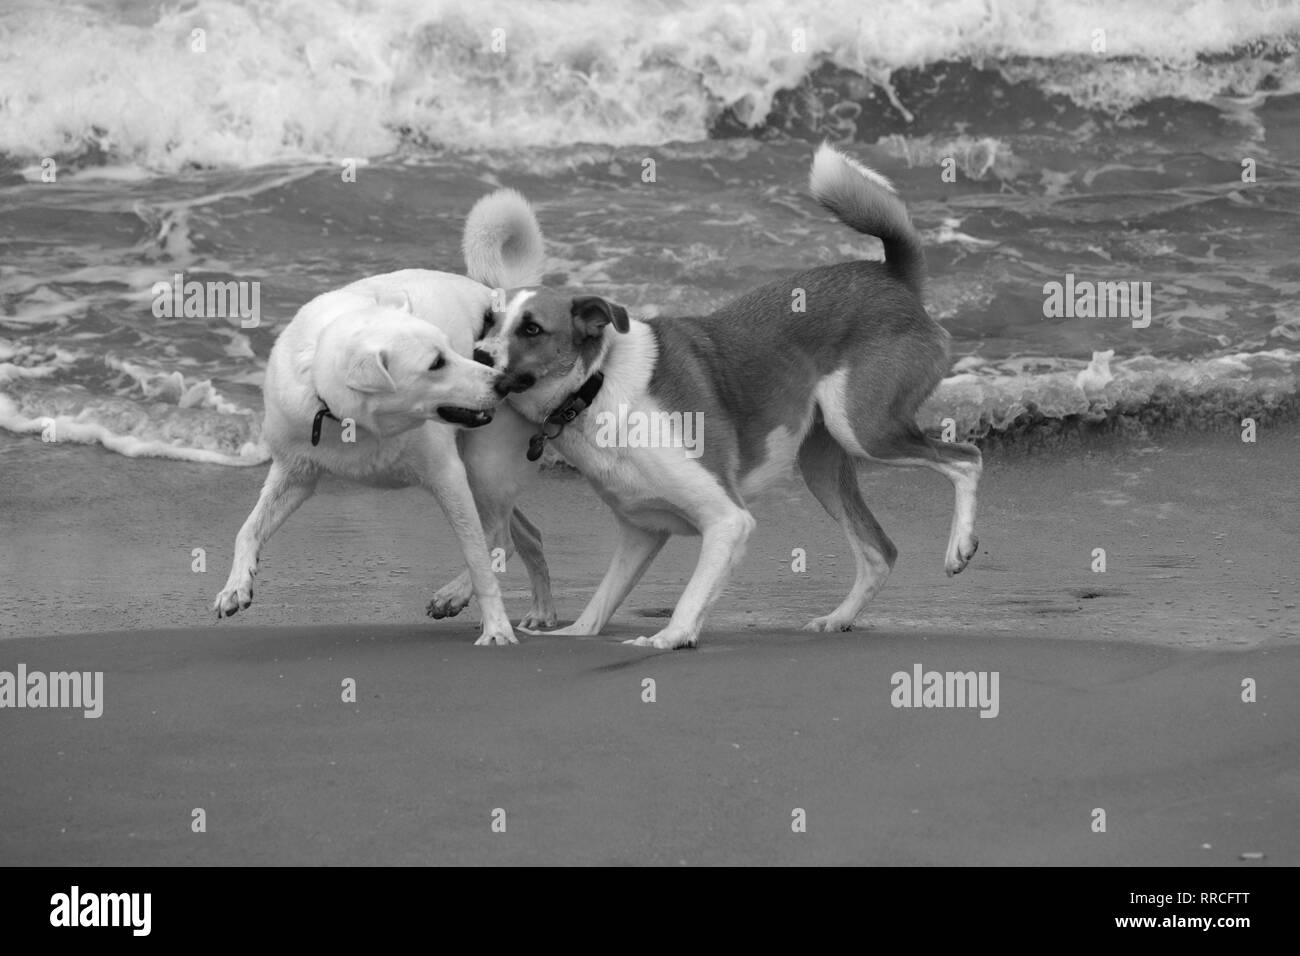 2 chiens ludique de jouer et se battre sur une plage en noir et blanc Banque D'Images